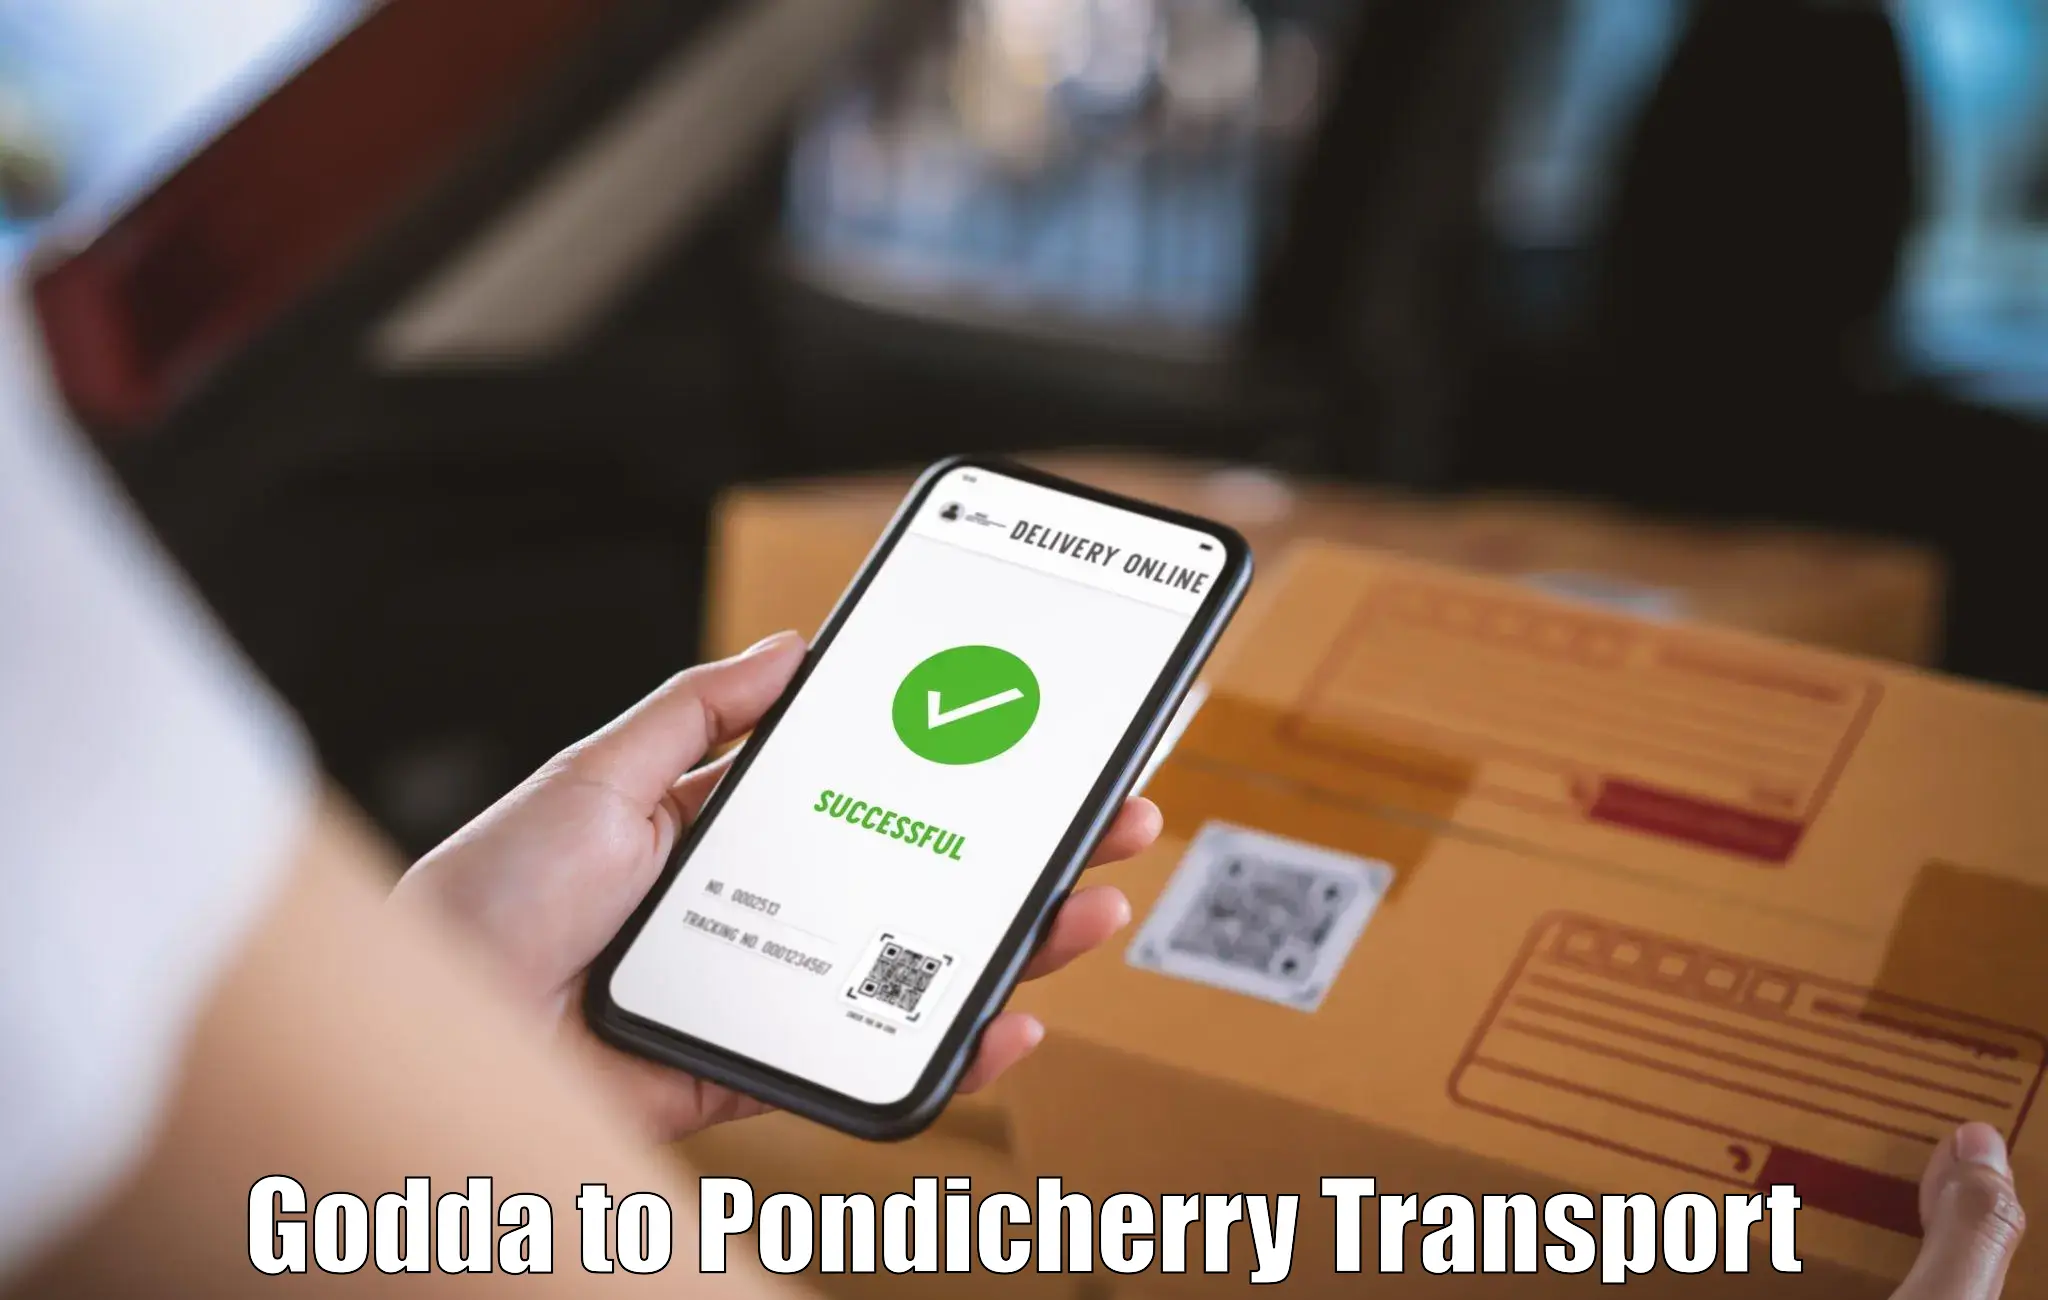 Transport in sharing Godda to NIT Puducherry